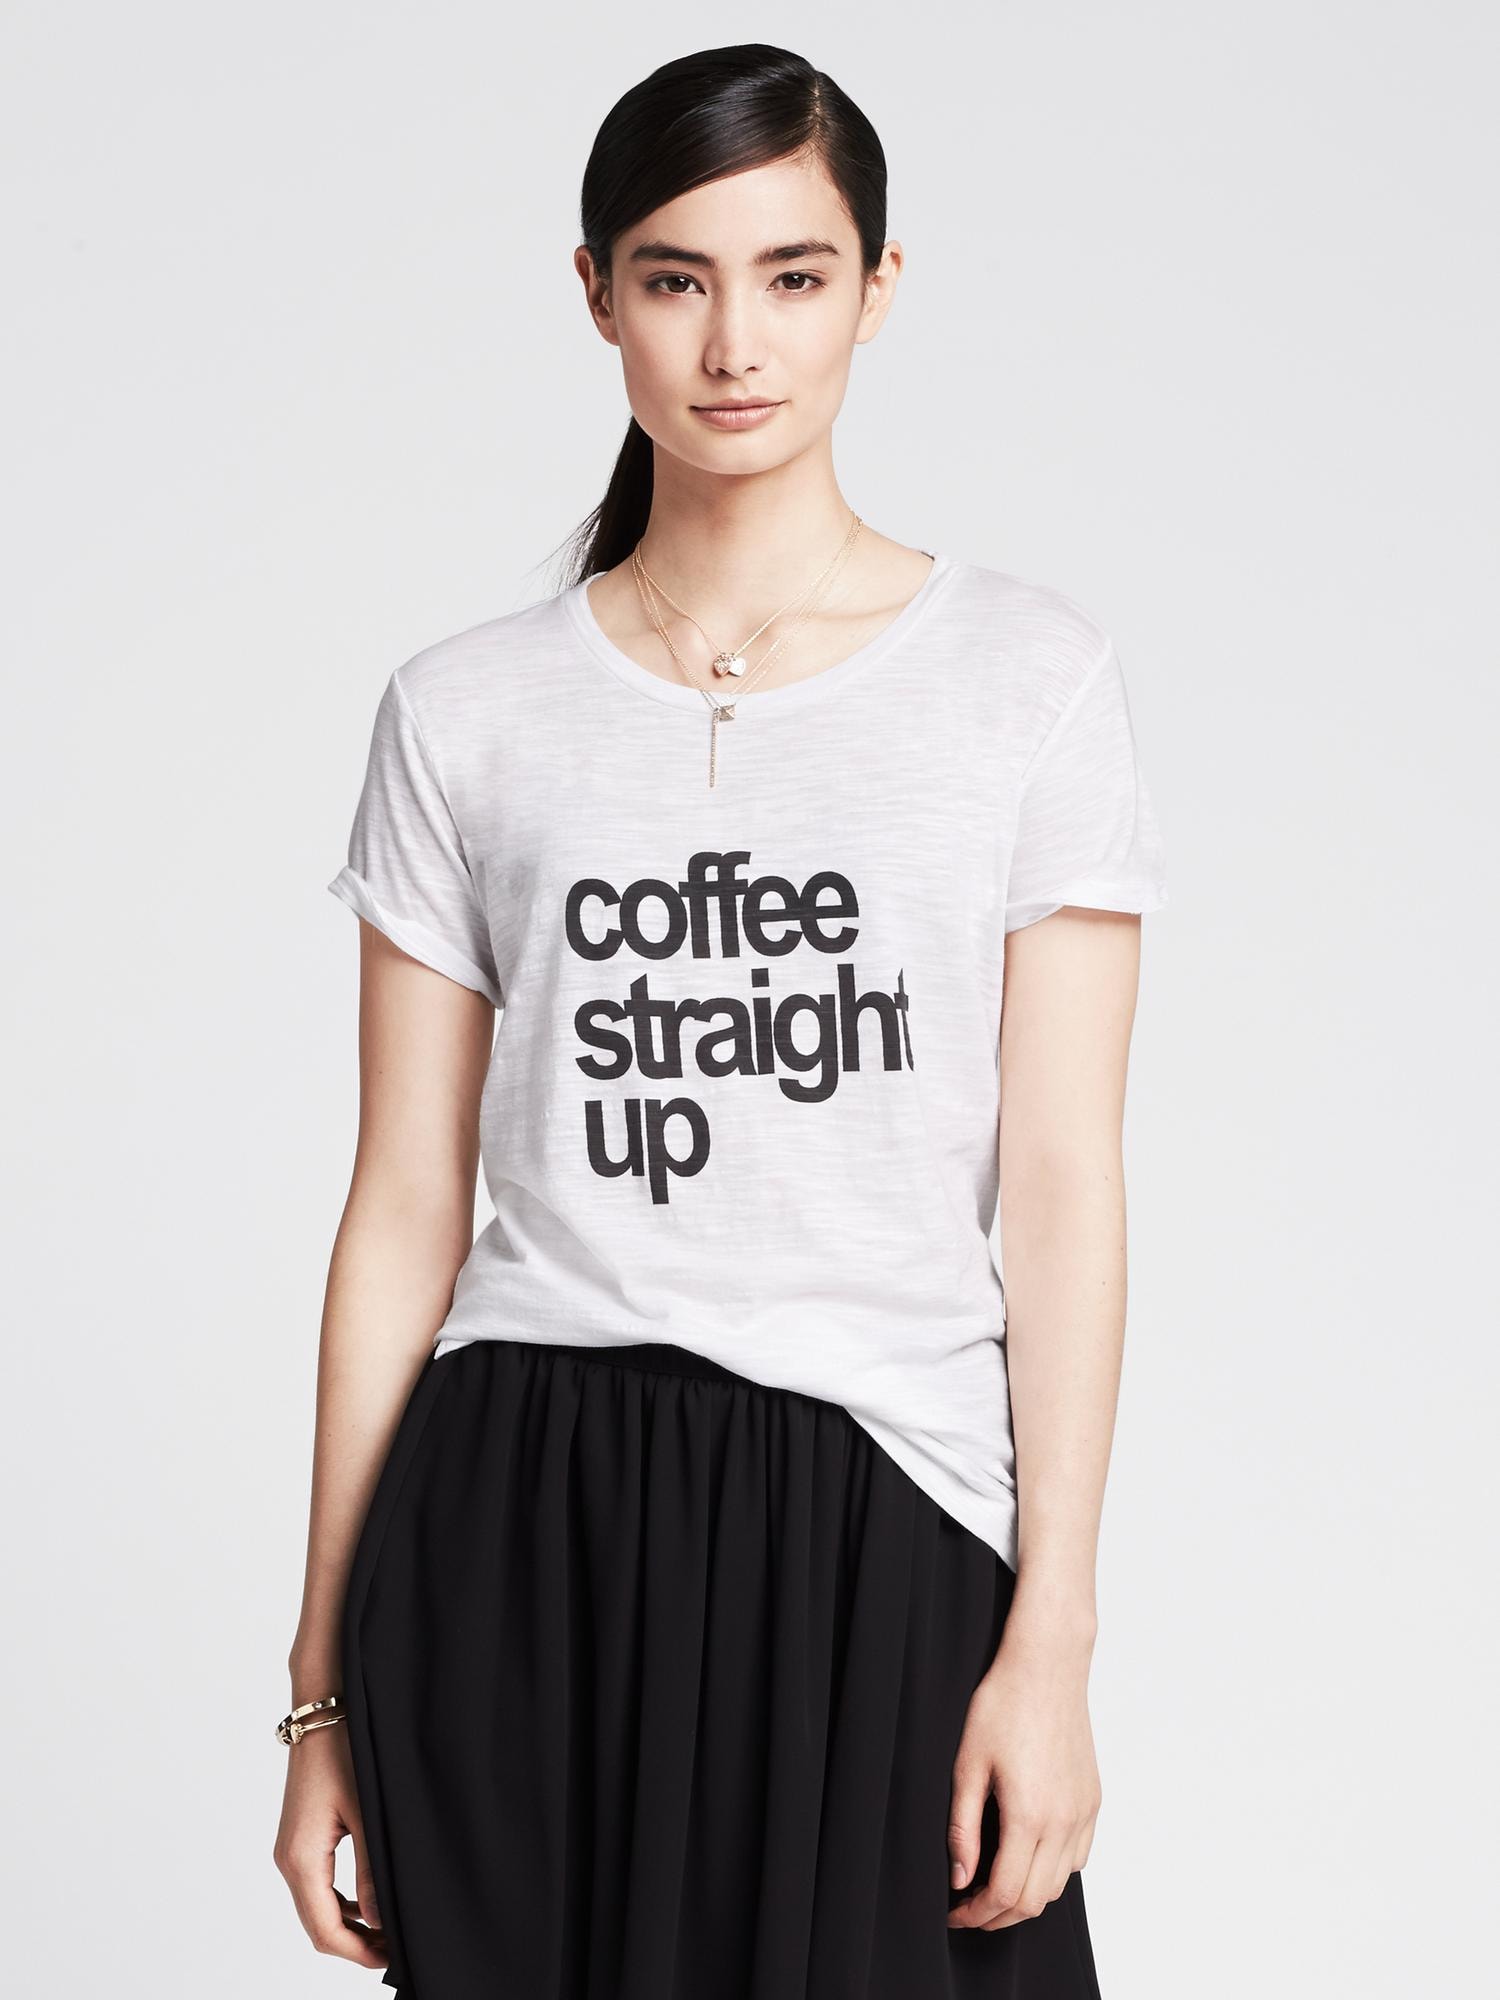 "Coffee Straight Up" Tee